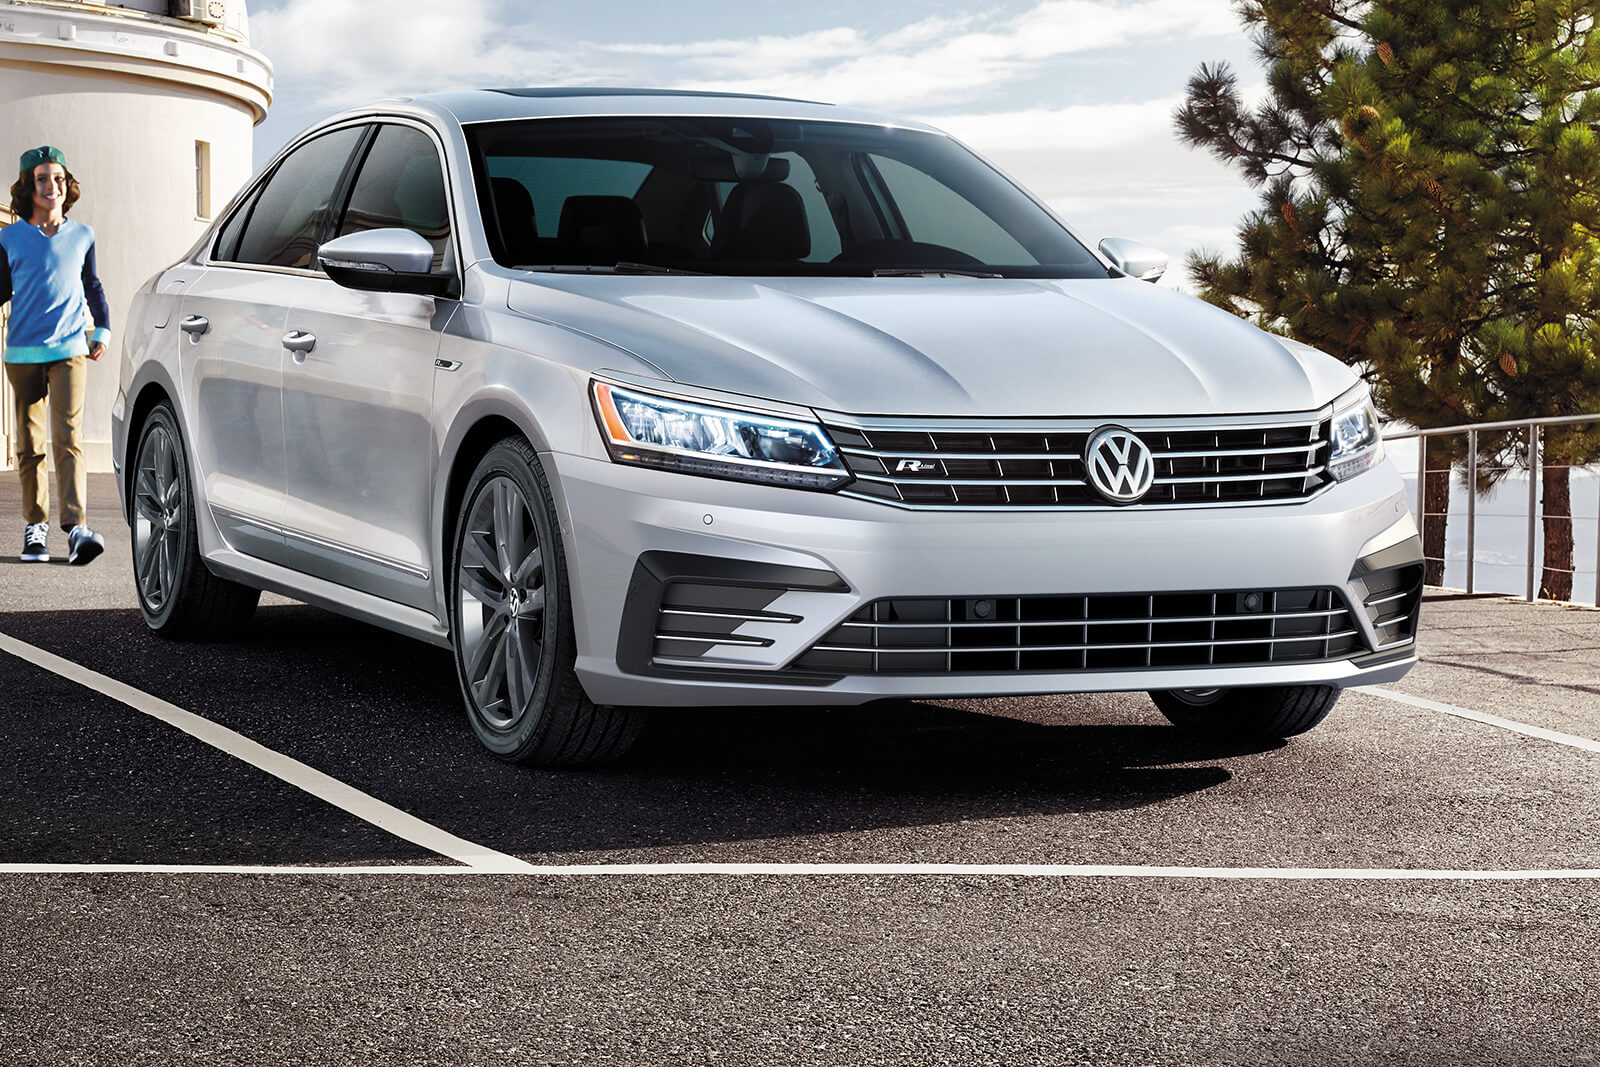 Vw Passat Volkswagen Passat Reviews Prices 2019 10 15